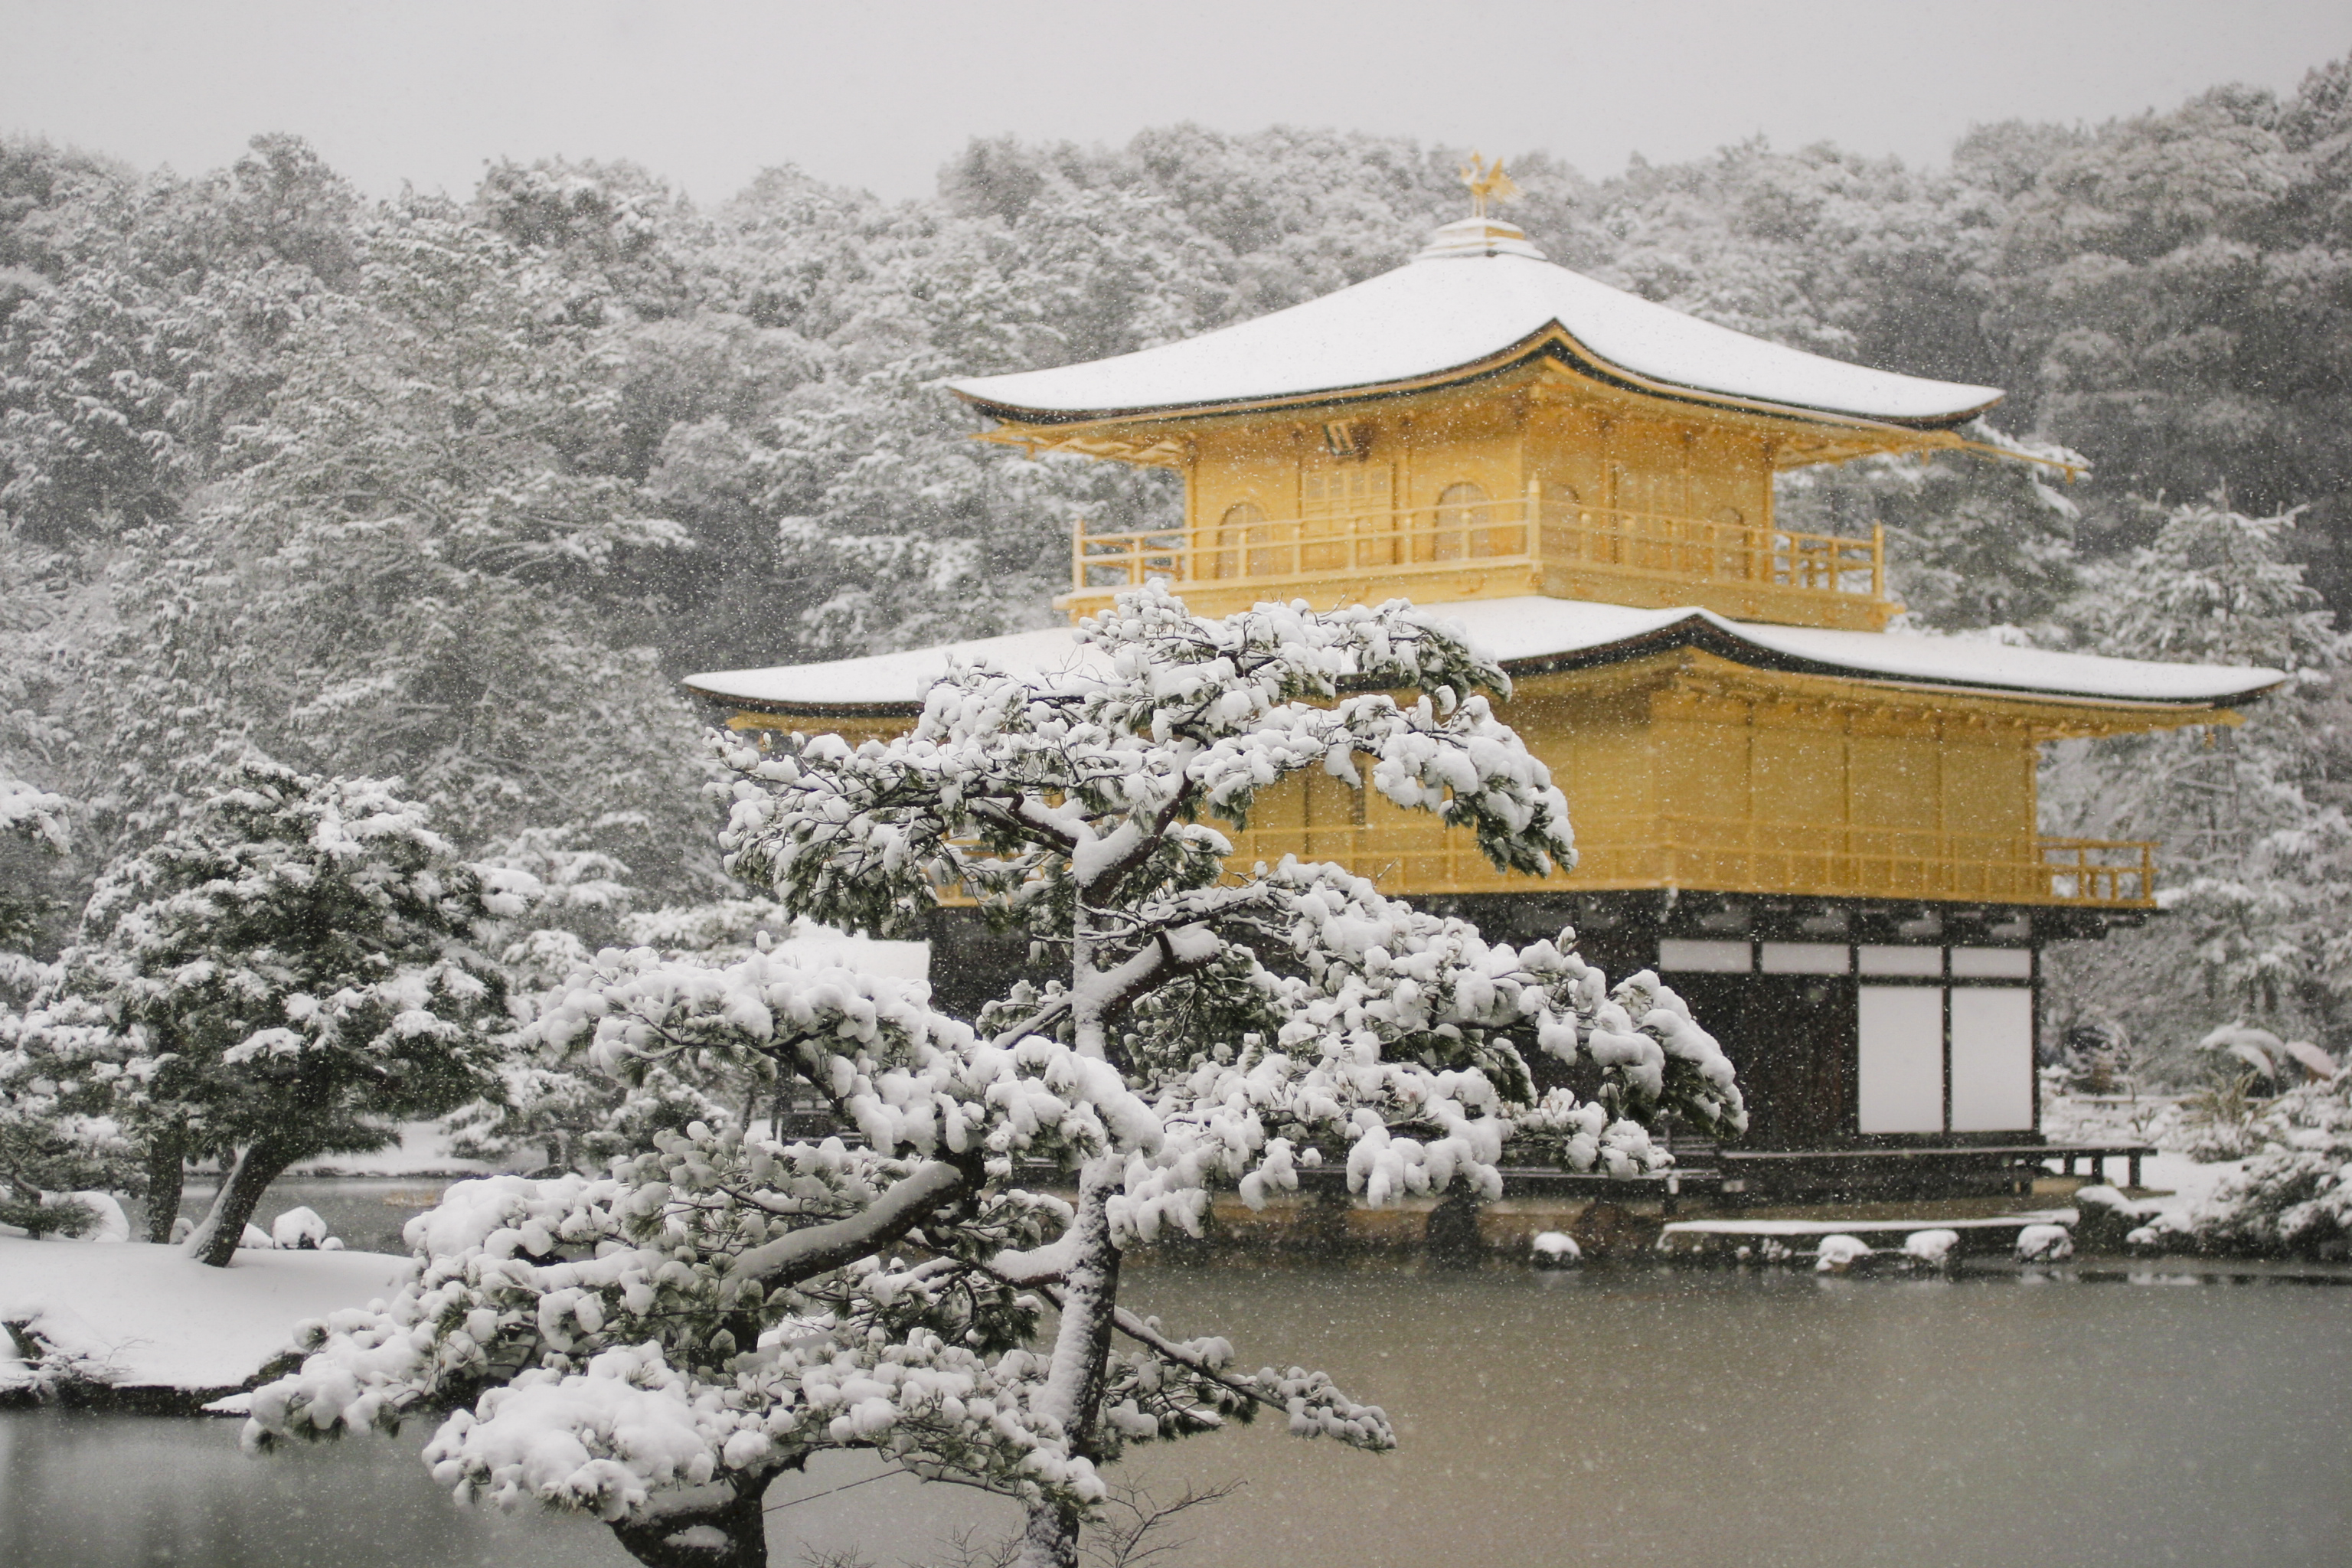 積雪の金閣寺